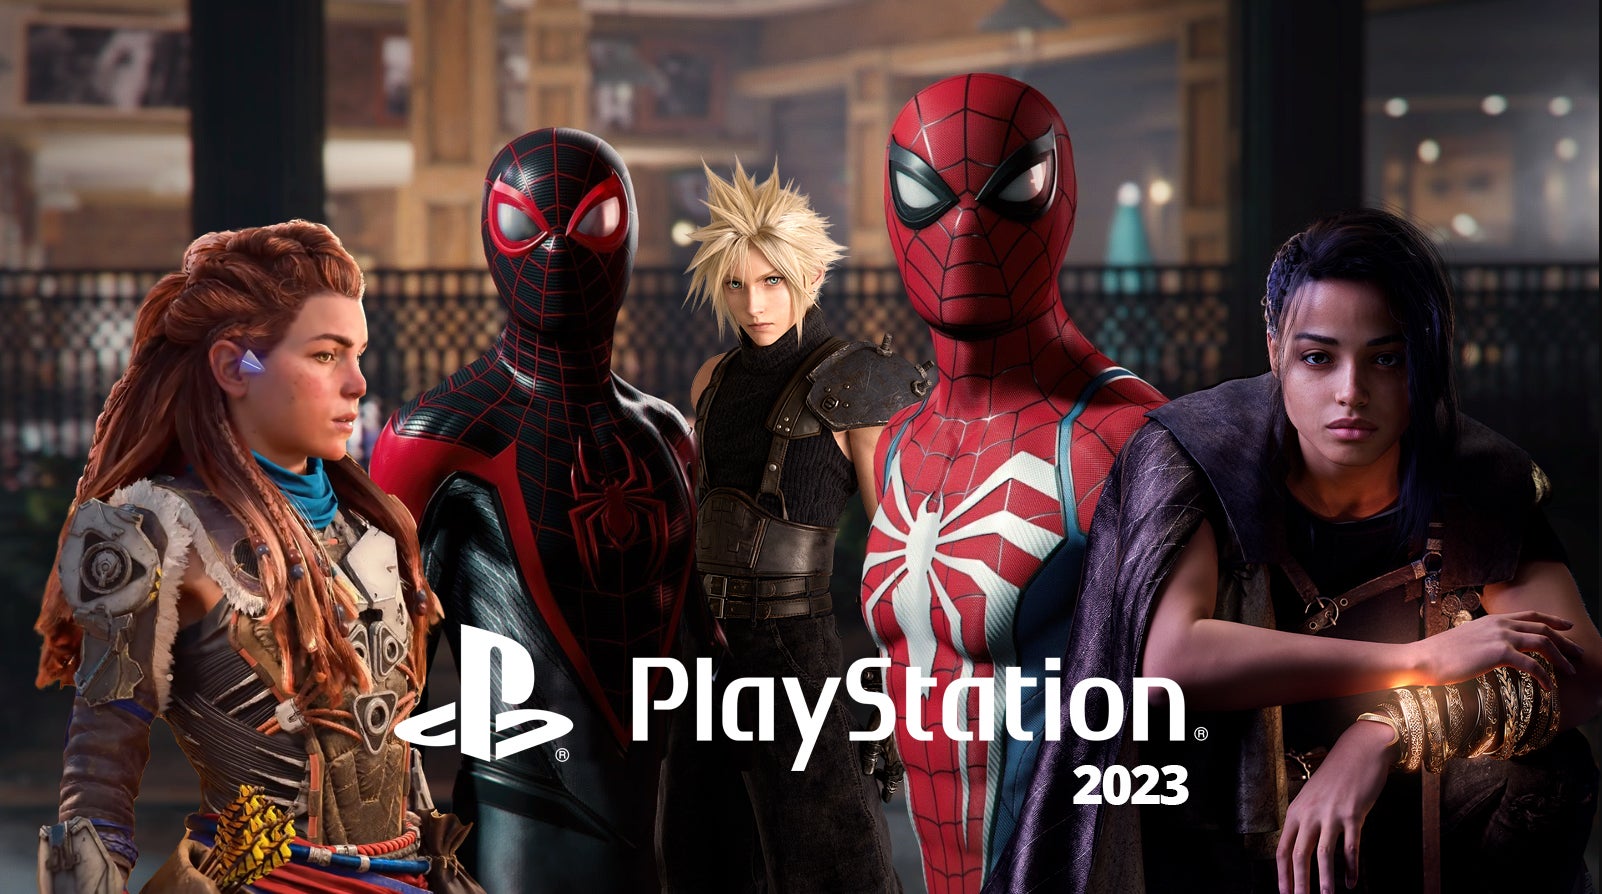 Imagem para Jogos exclusivos Playstation agendados para 2023